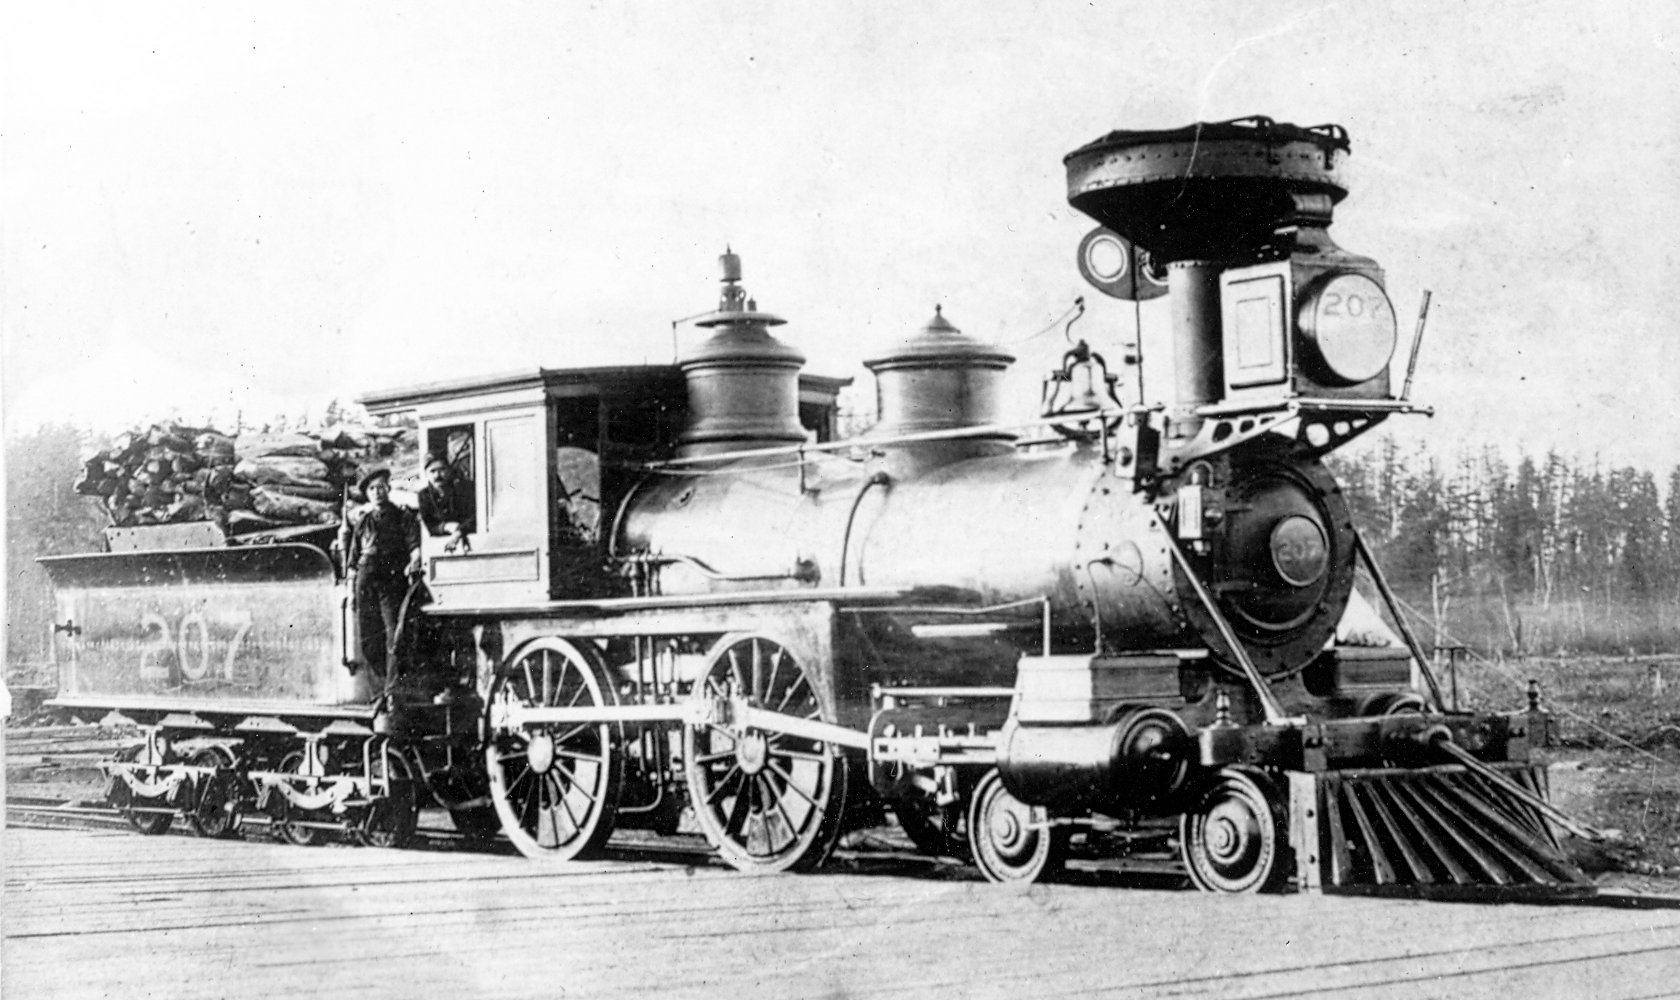 locomotive-wood-burning-no-207-1870s1.jpg